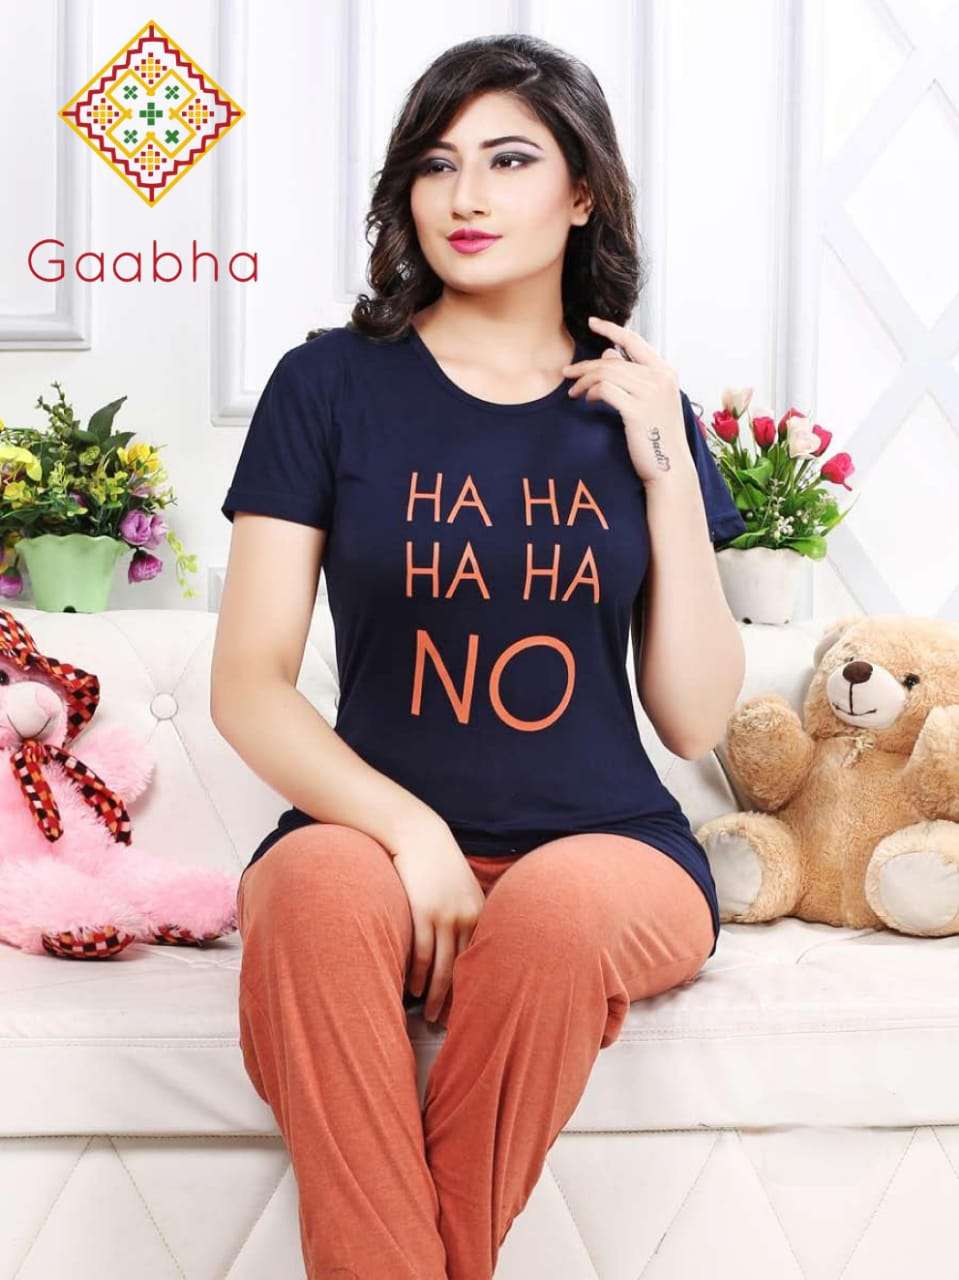 Gaabha Sweet Dreams Vol 3 Cotton Hosiery T-Shirts Pajama Nig...